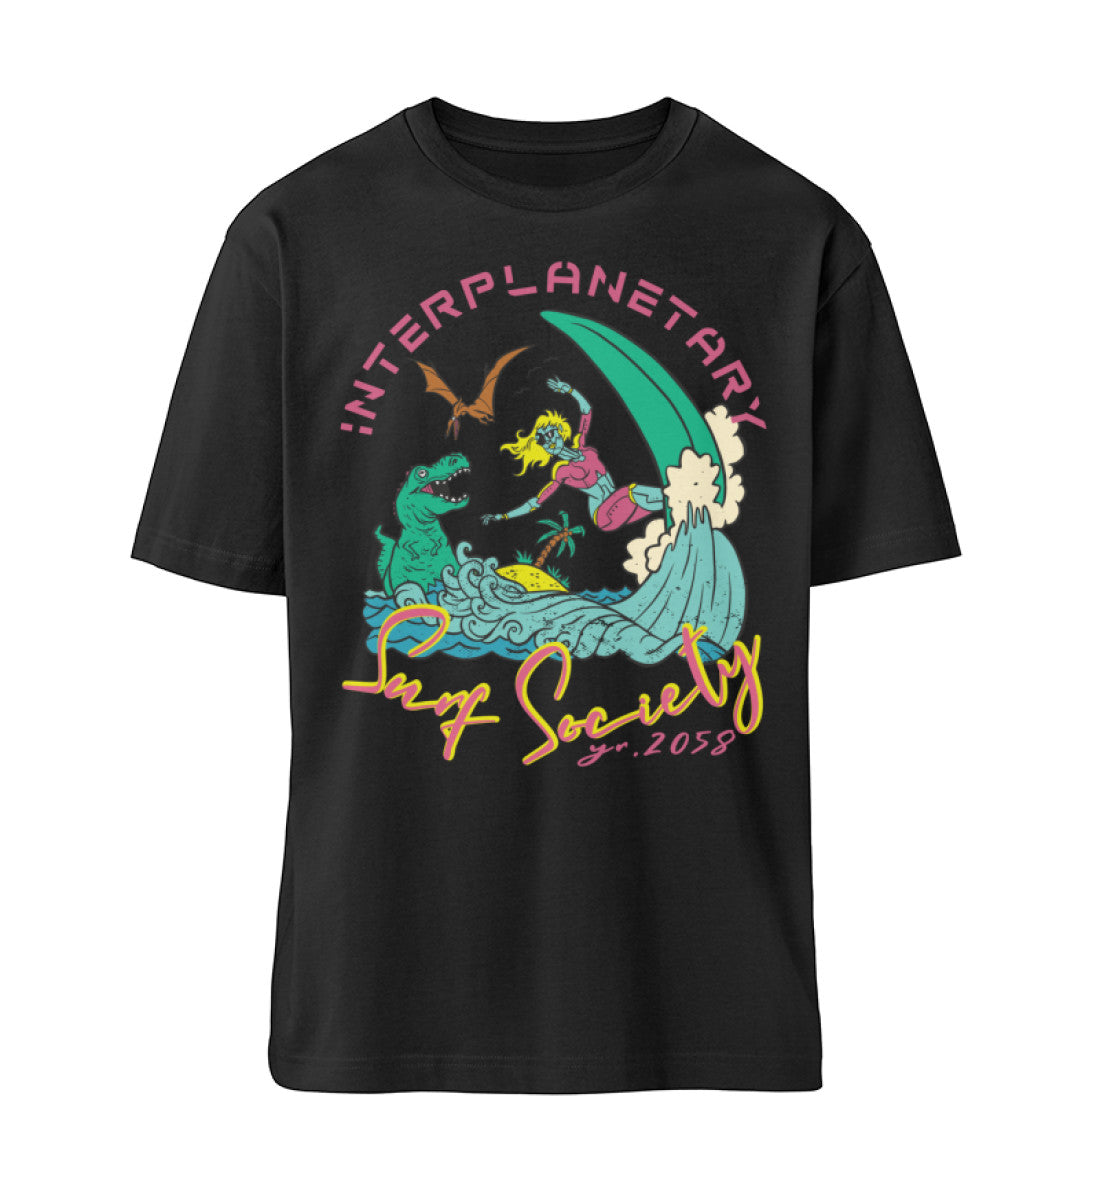 Schwarzes T-Shirt Unisex Relaxed Fit für Frauen und Männer bedruckt mit dem Design der Roger Rockawoo Kollektion interplanetary surf community